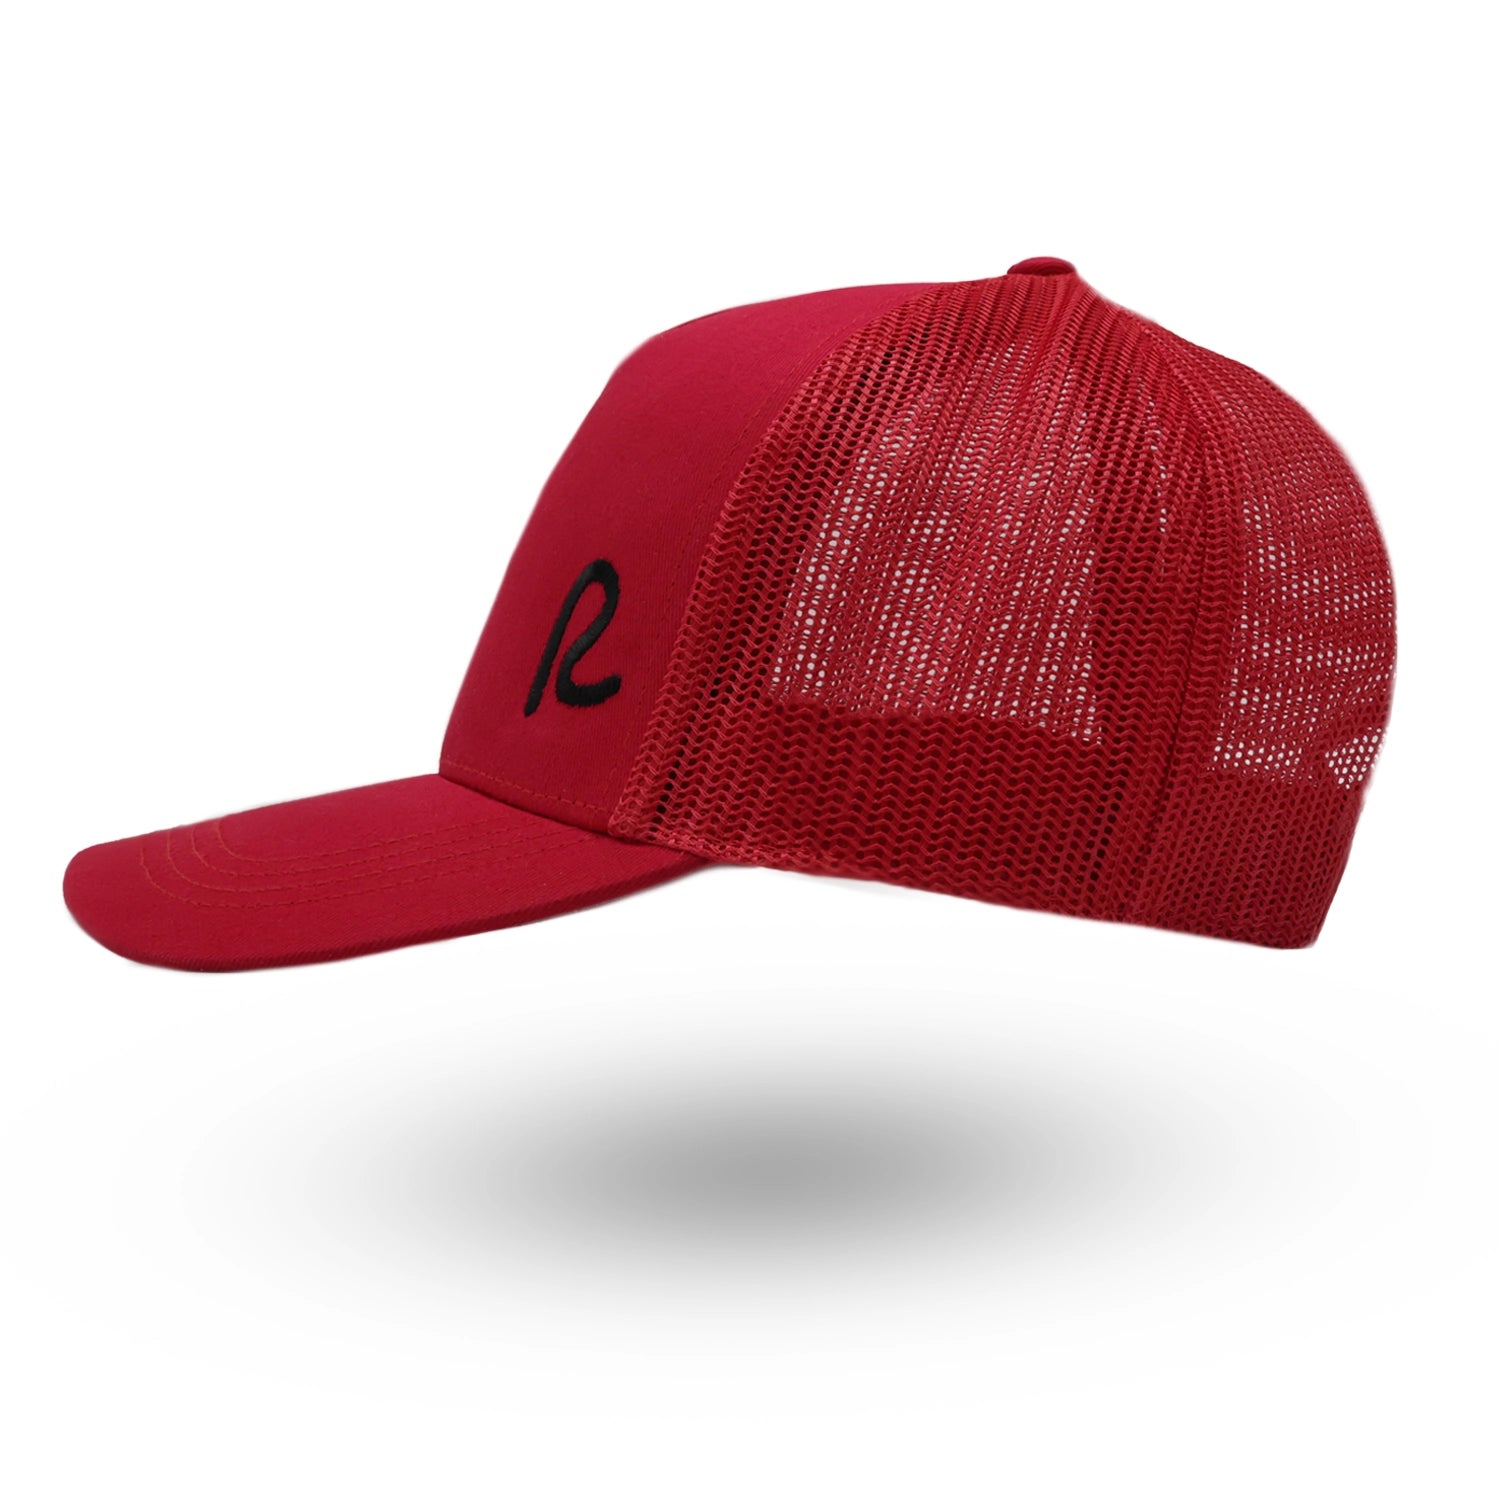 Rewired Essential R Trucker - Red/Black - Left